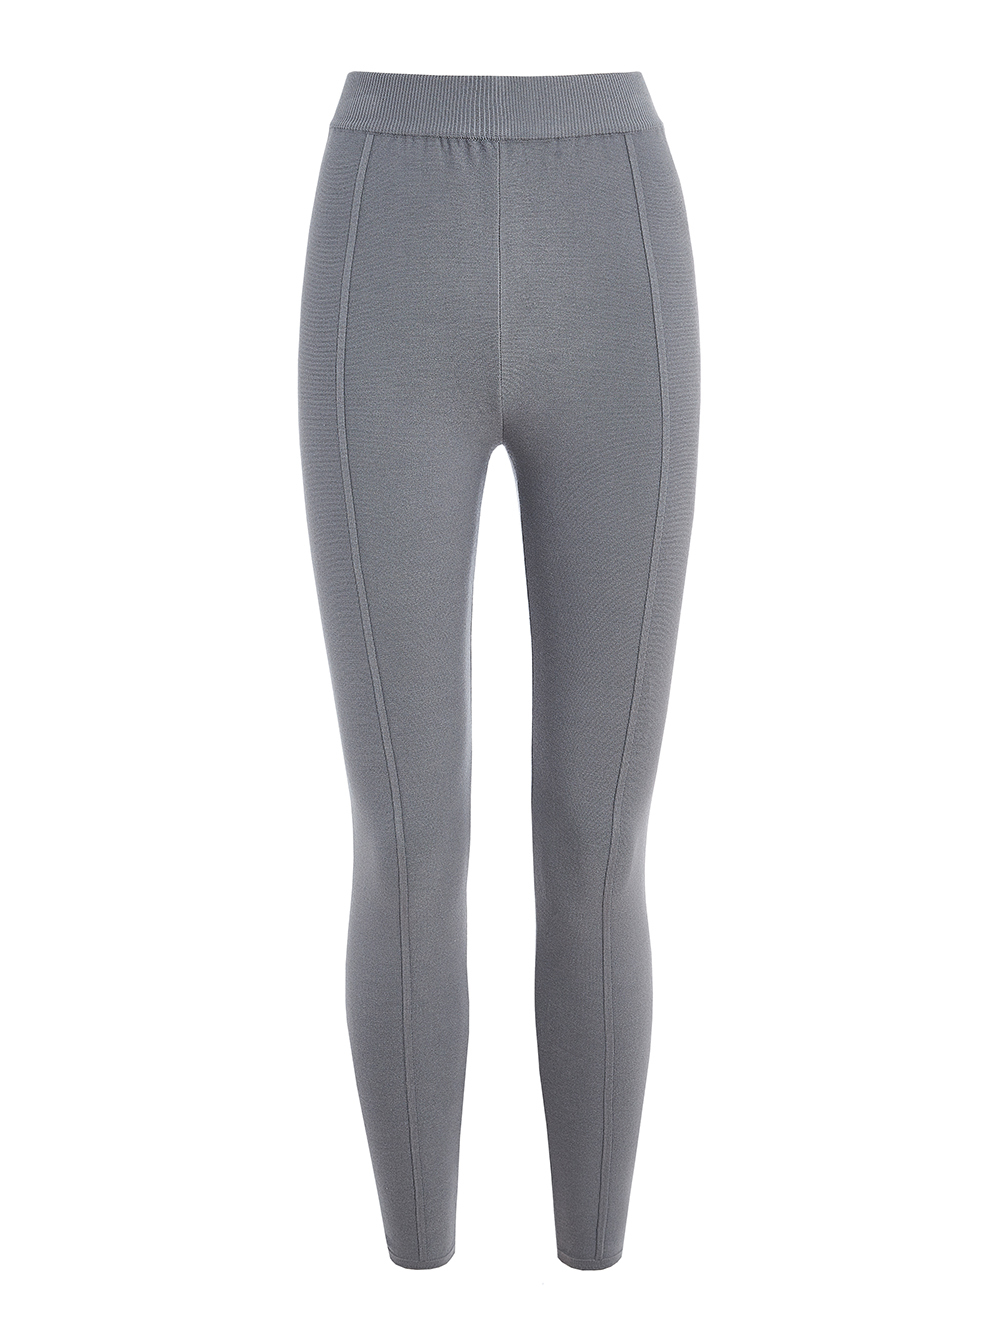 Женские брюки светло-серого цвета с рельефными полосками из вискозы